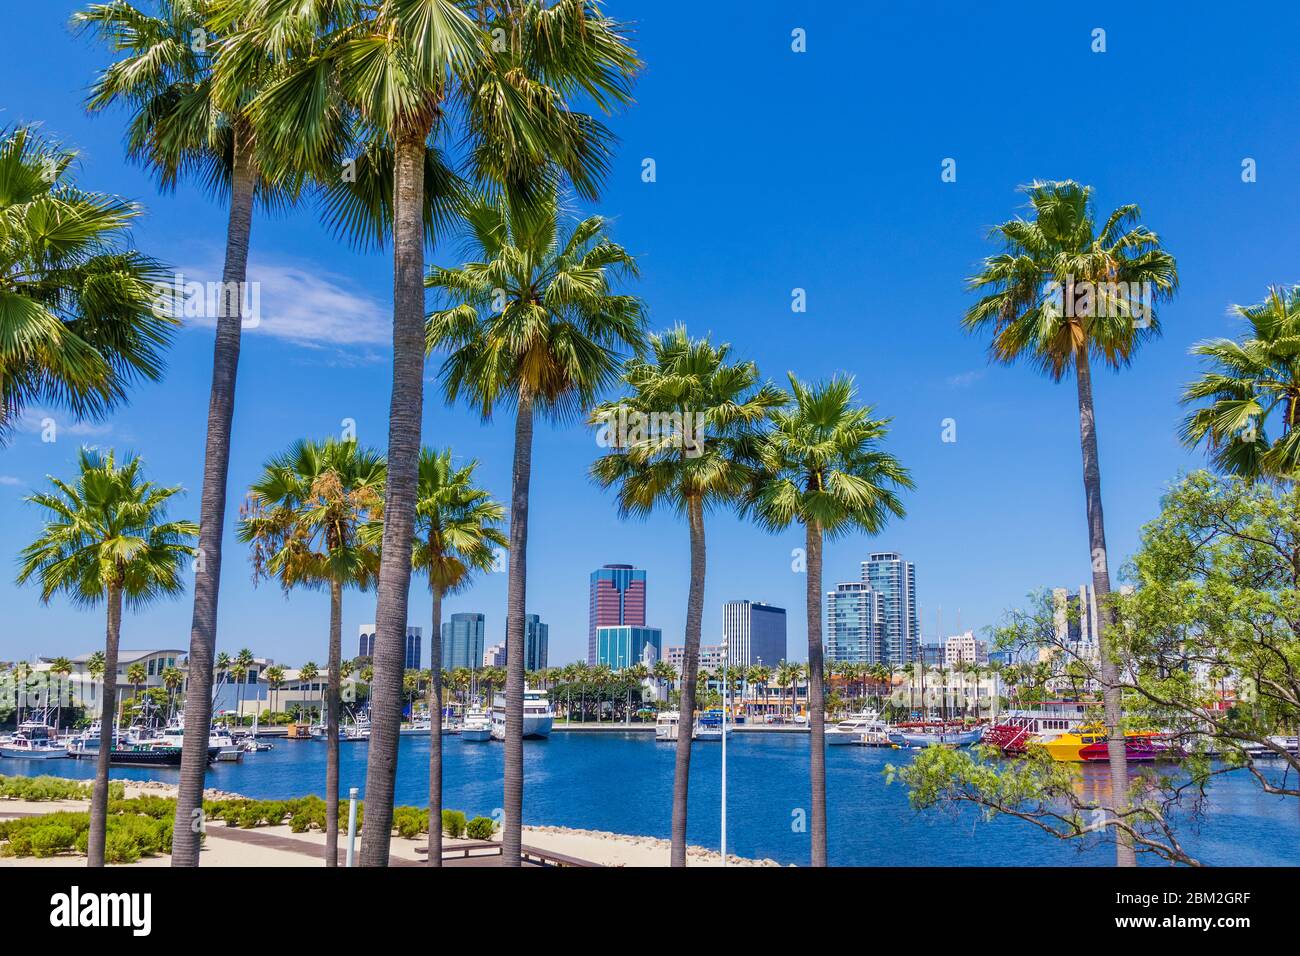 Rainbow Harbour si trova di fronte allo skyline di Long Beach in California. Palme e negozi circondano la costa del porto turistico pieno di barche. Foto Stock